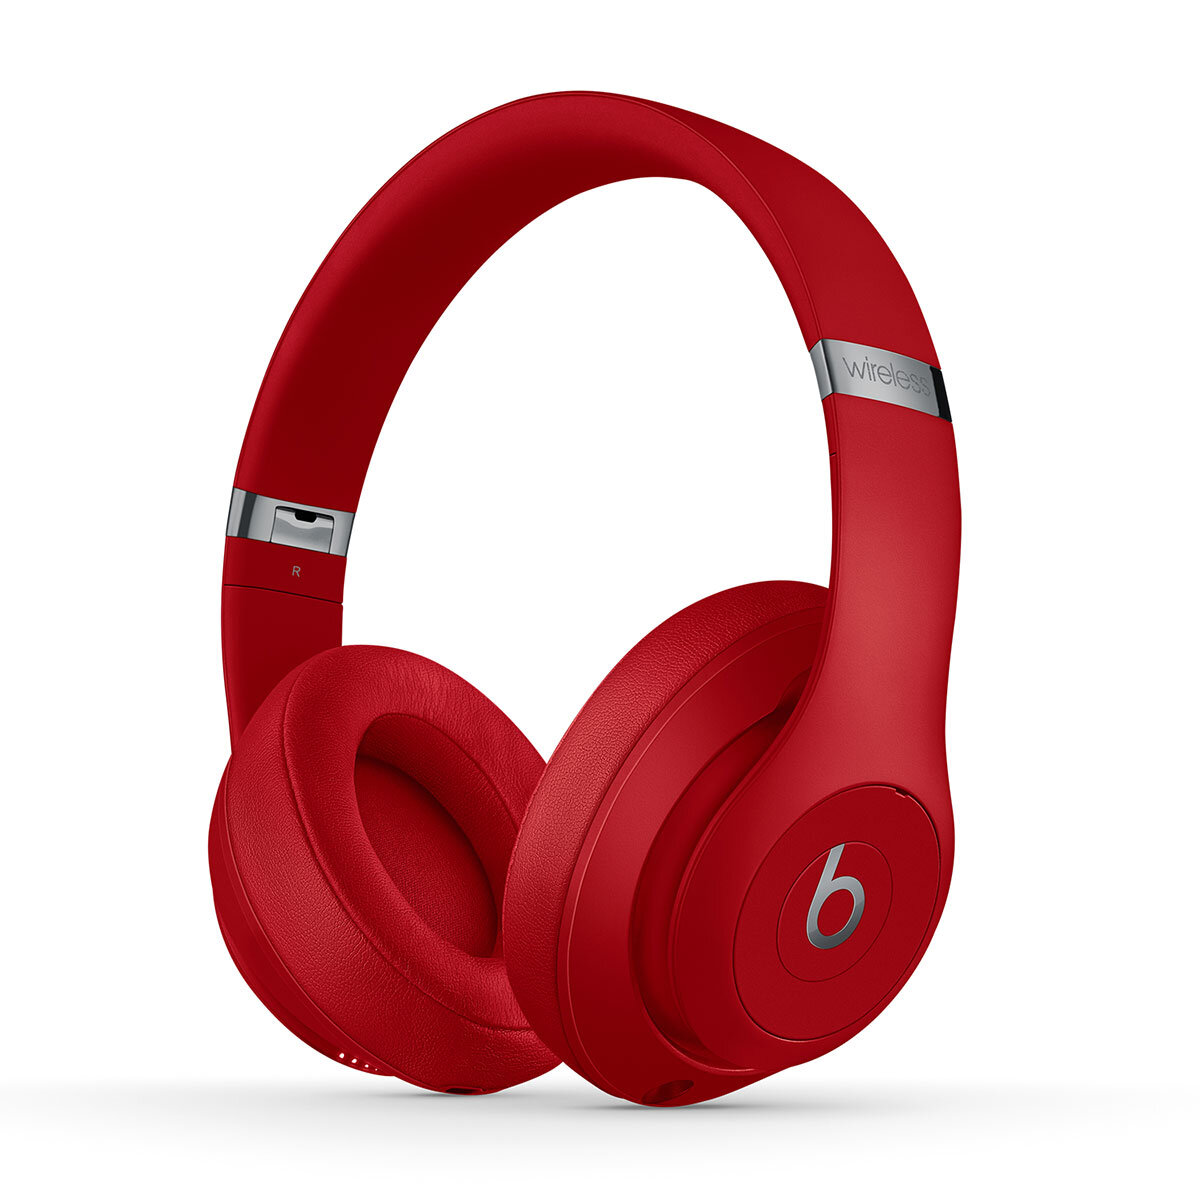 Buy BeatsStudio3, Beats Studio3 Wireless Headphones at costco.co.uk